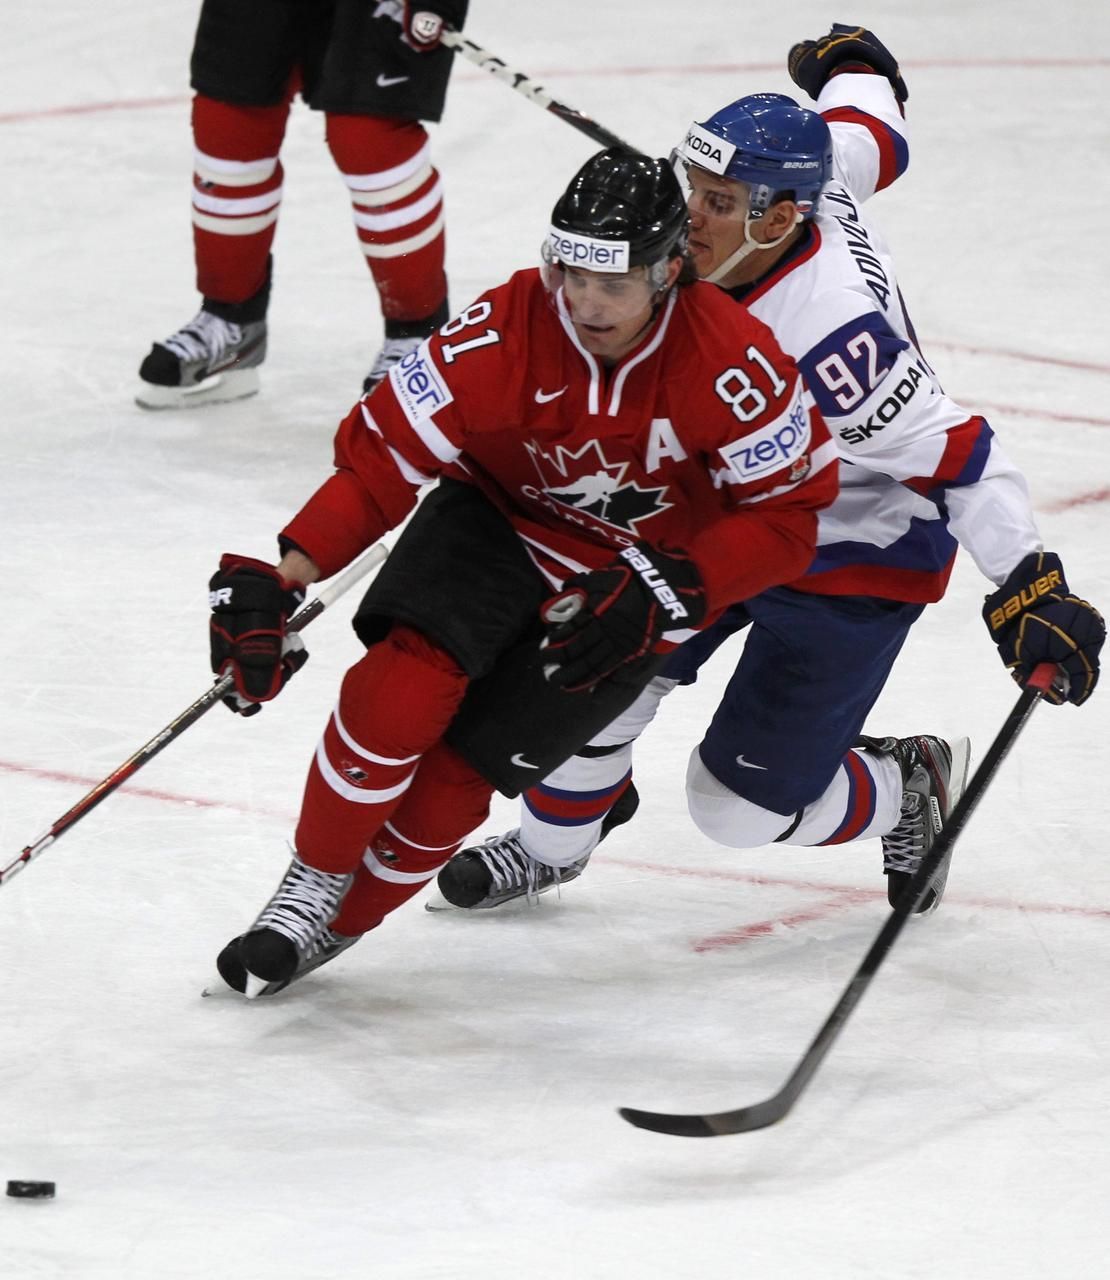 MS v hokeji 2012: Kanada - Slovensko (Radivojevič, Sharp)